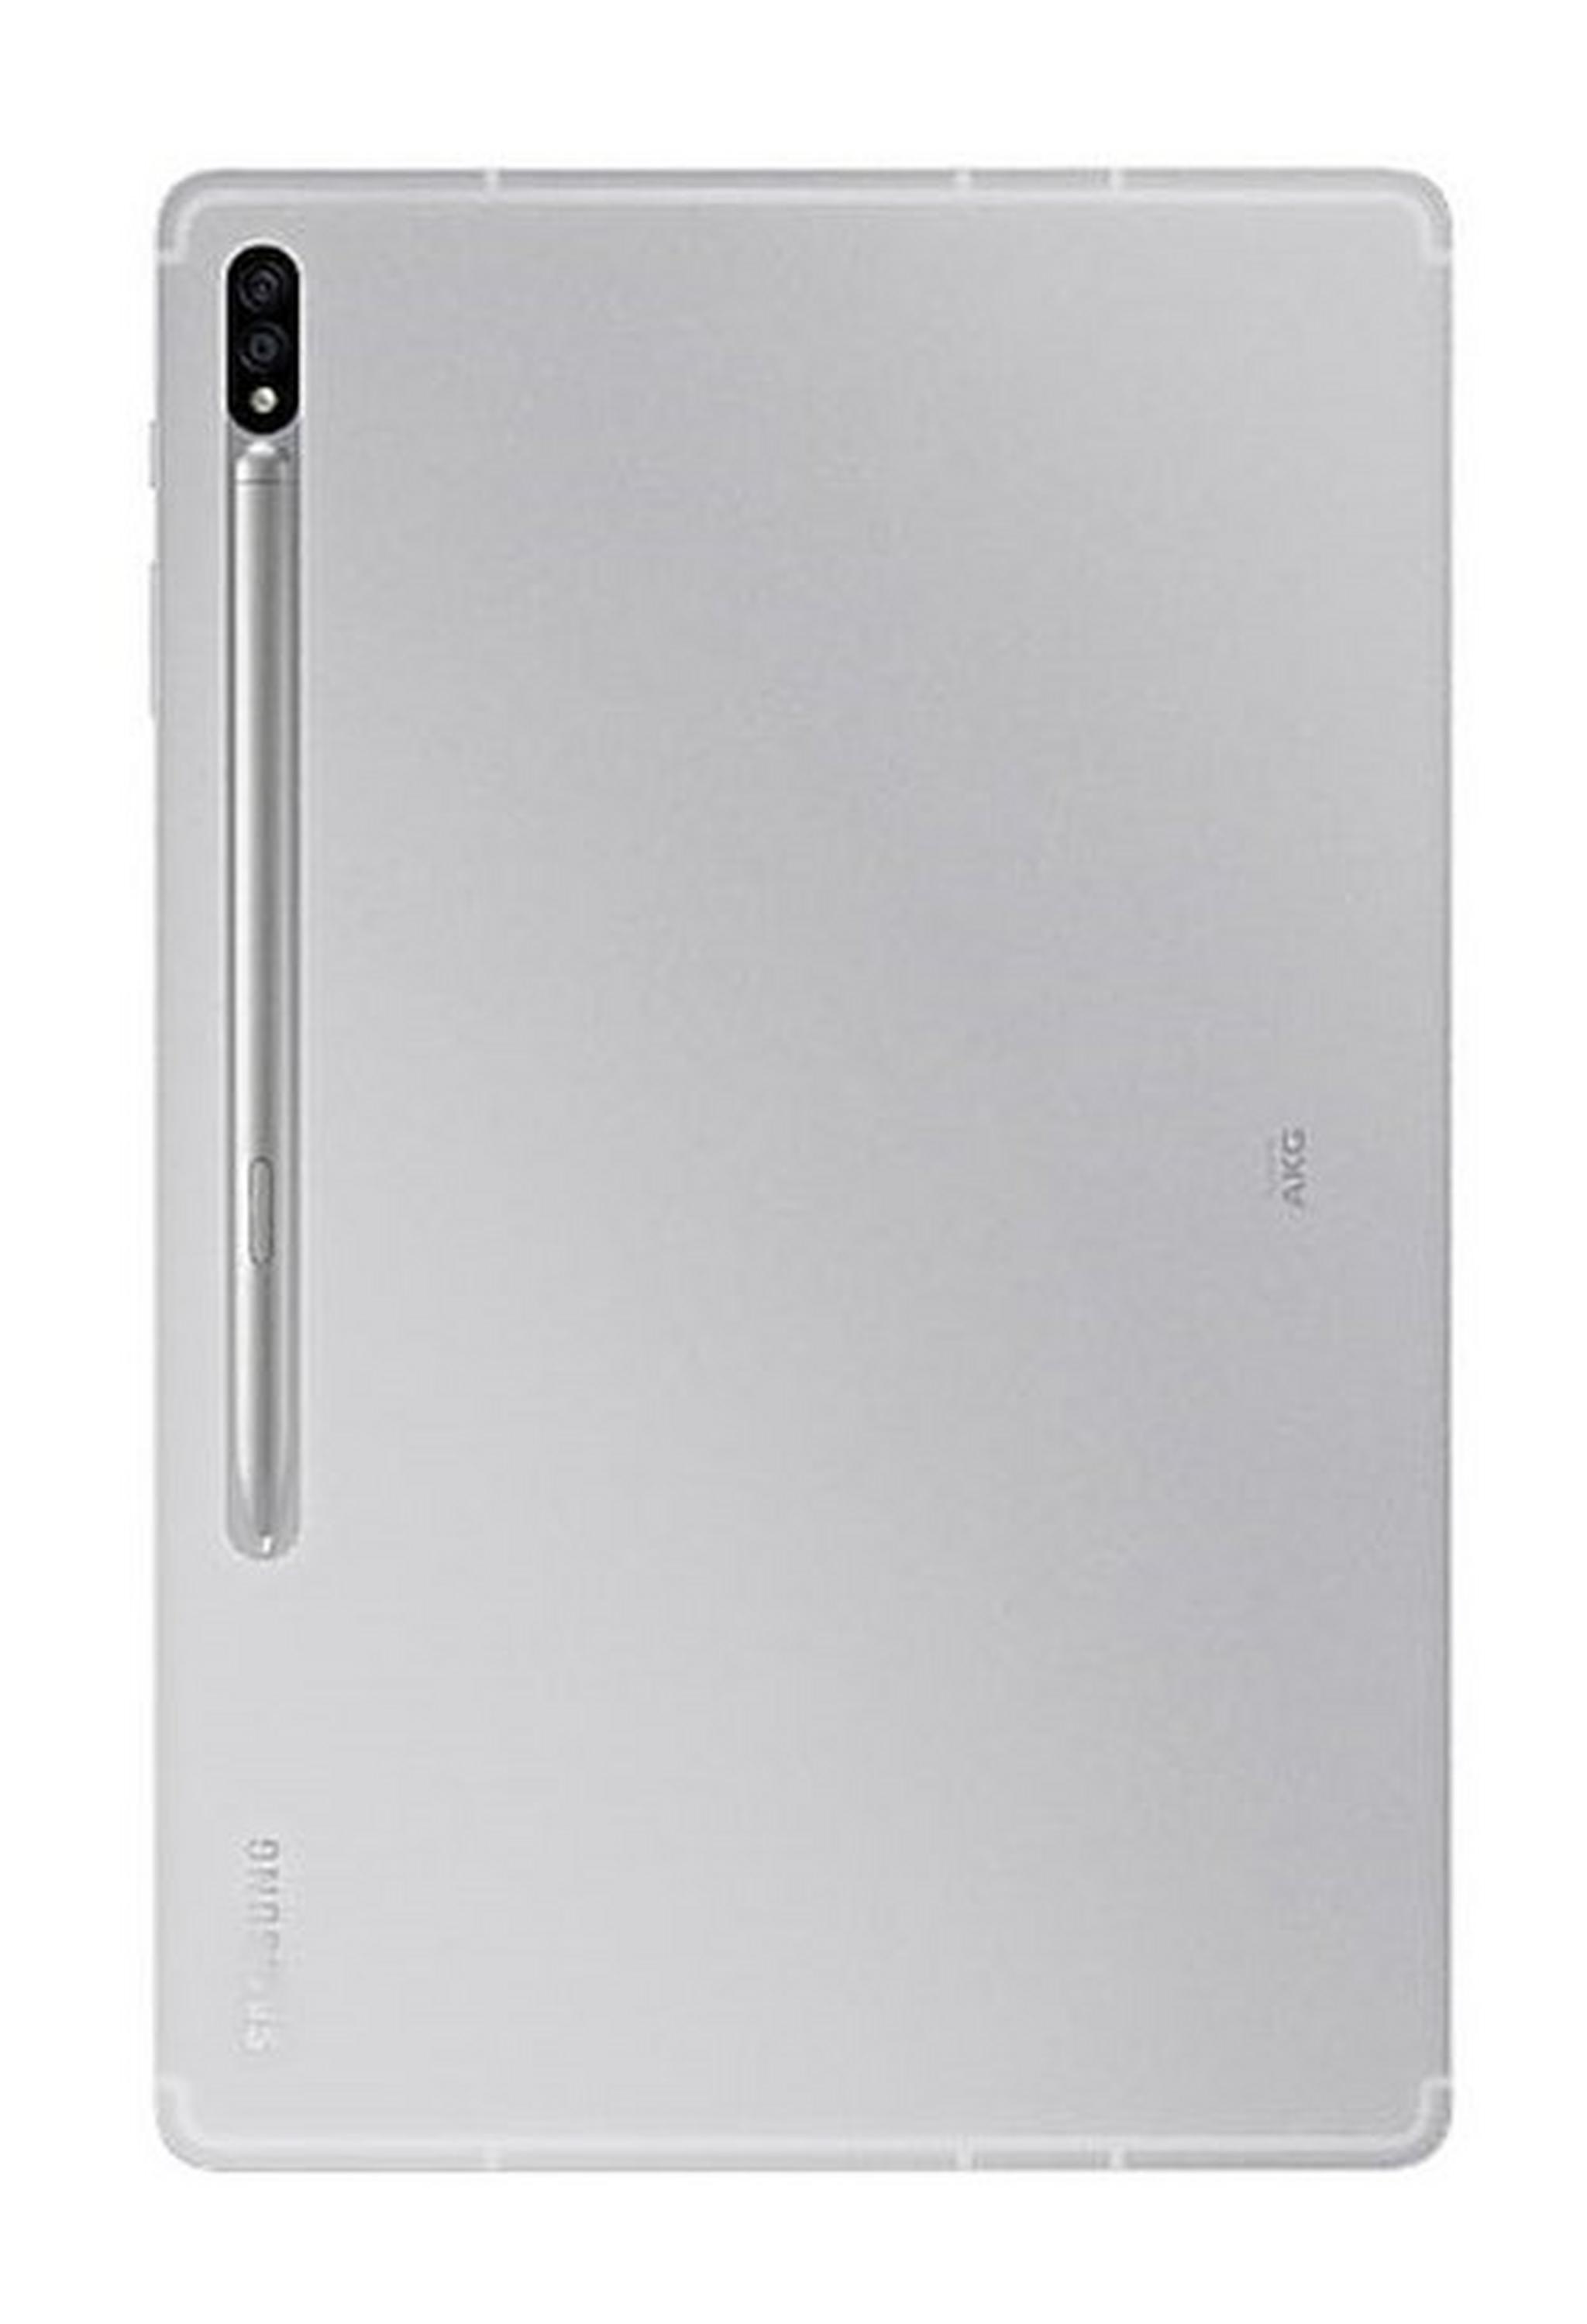 Samsung Galaxy Tab S7 FE 64GB LTE 12.4" Tablet - Silver